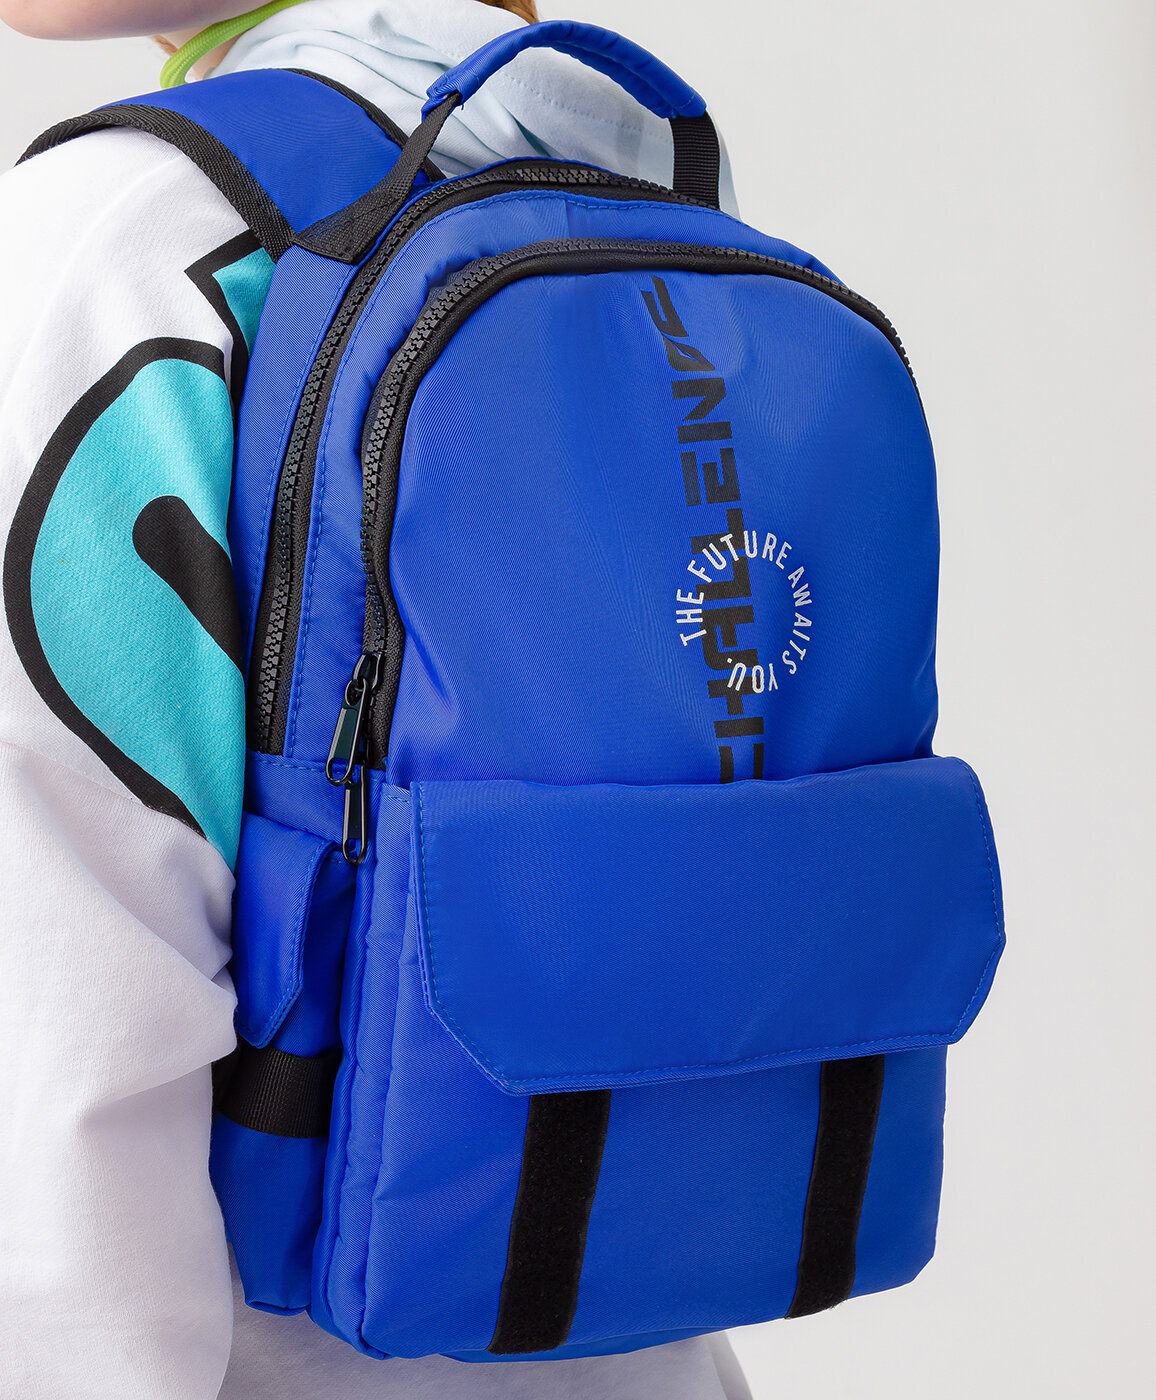 Рюкзак синий Button Blue (One size) - фото №1